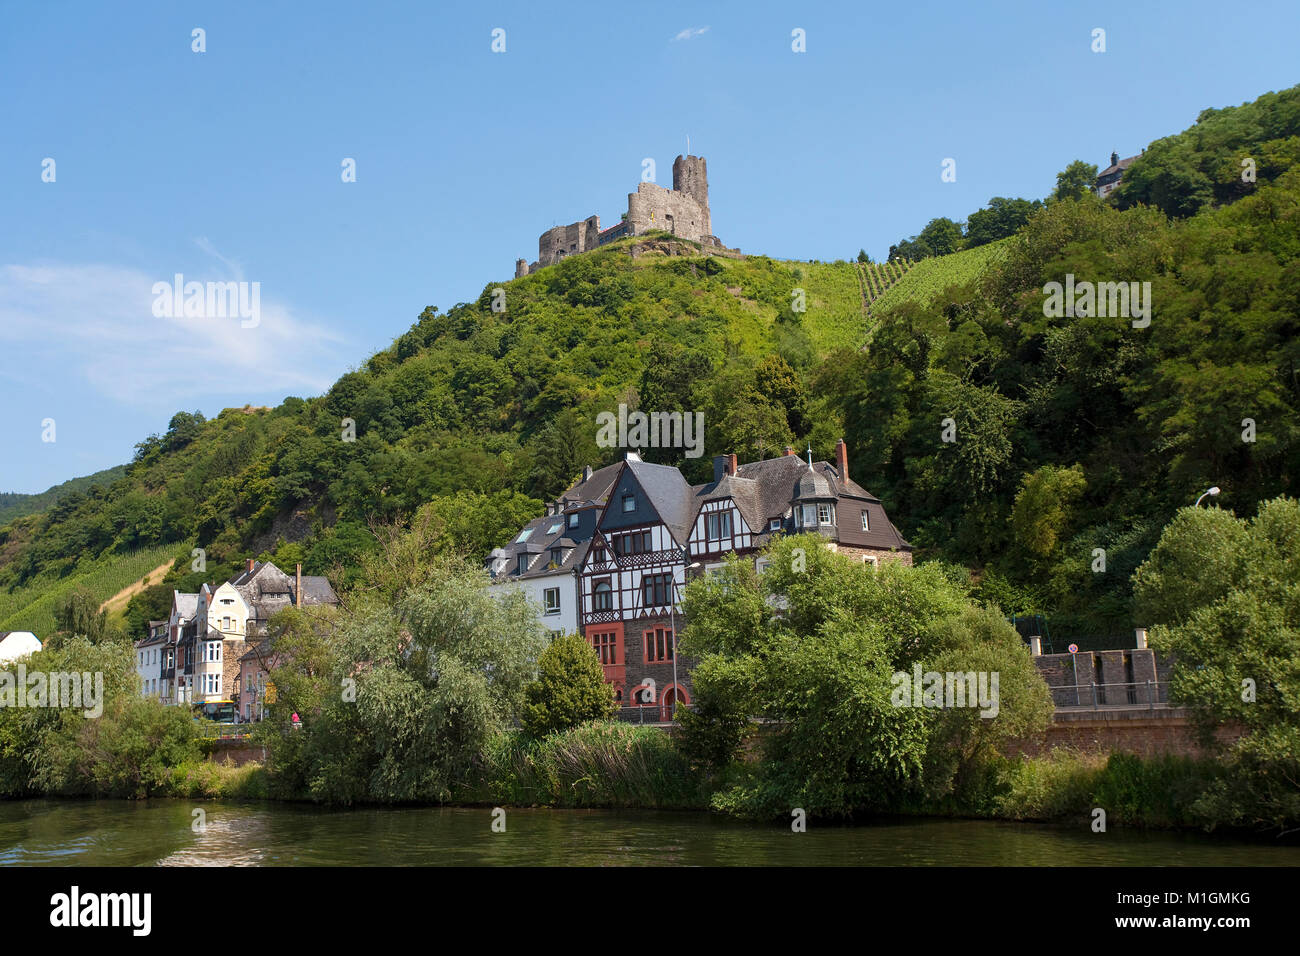 Fachwerkhäuser unter dem historischen Burg Landshut, Bernkastel-Kues, Mosel, Rheinland-Pfalz, Deutschland, Europa Stockfoto